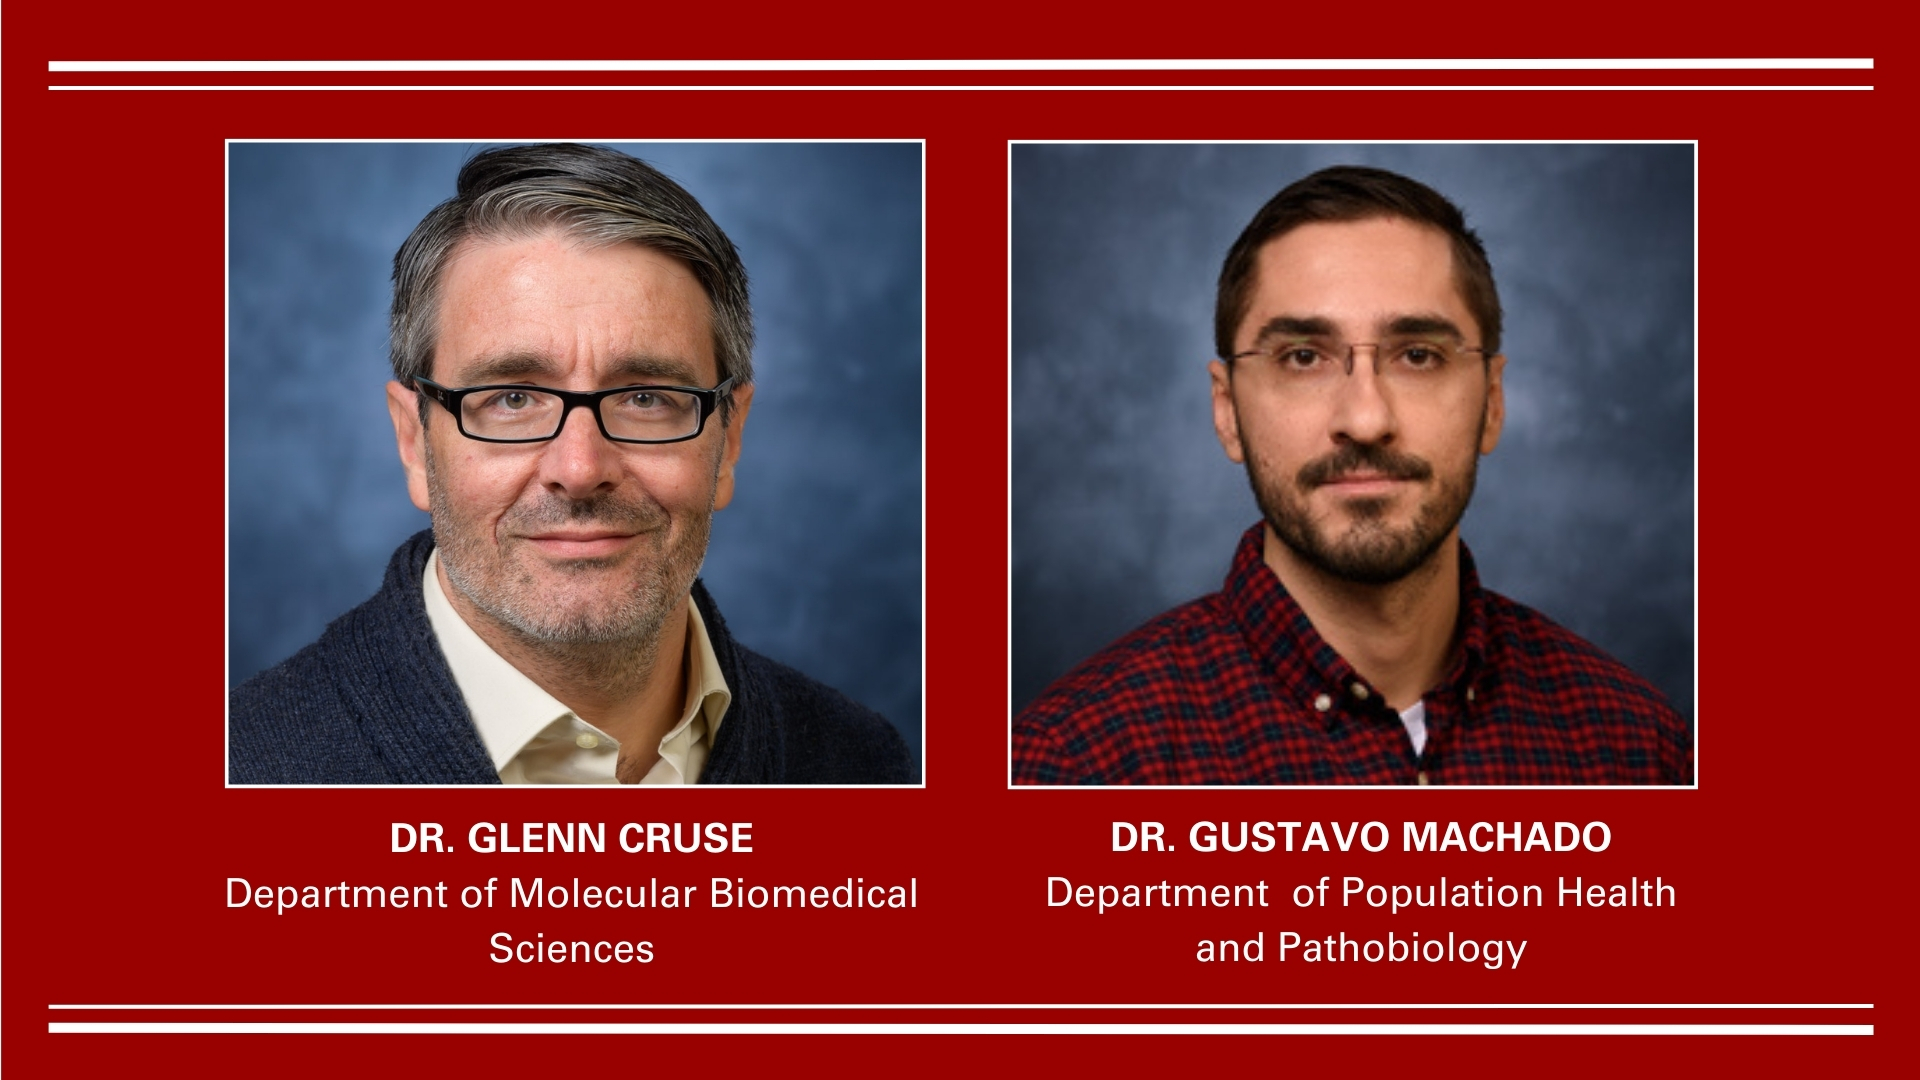 Dr. Glenn Cruse and Dr. Gustavo Machado